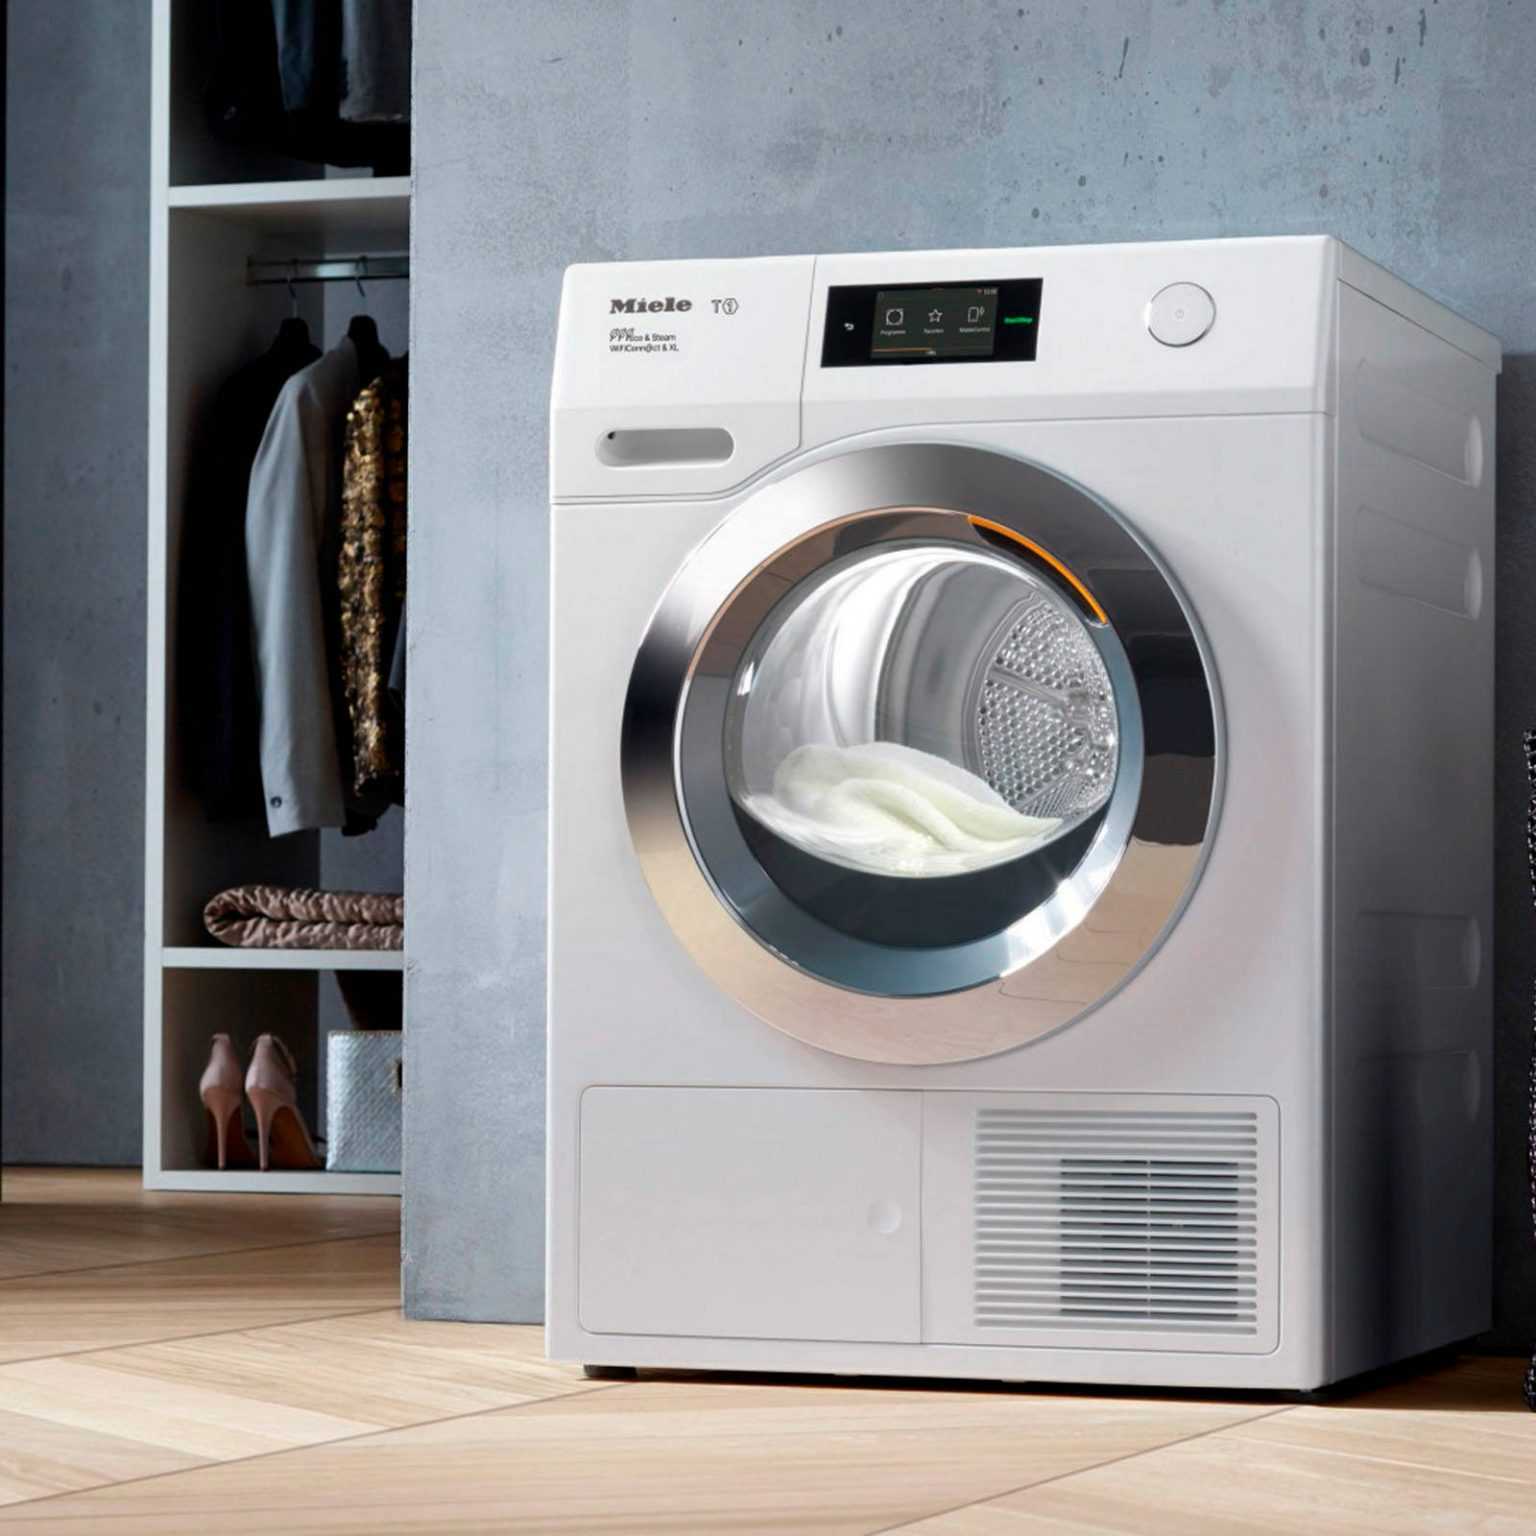 12 лучших бюджетных стиральных машин